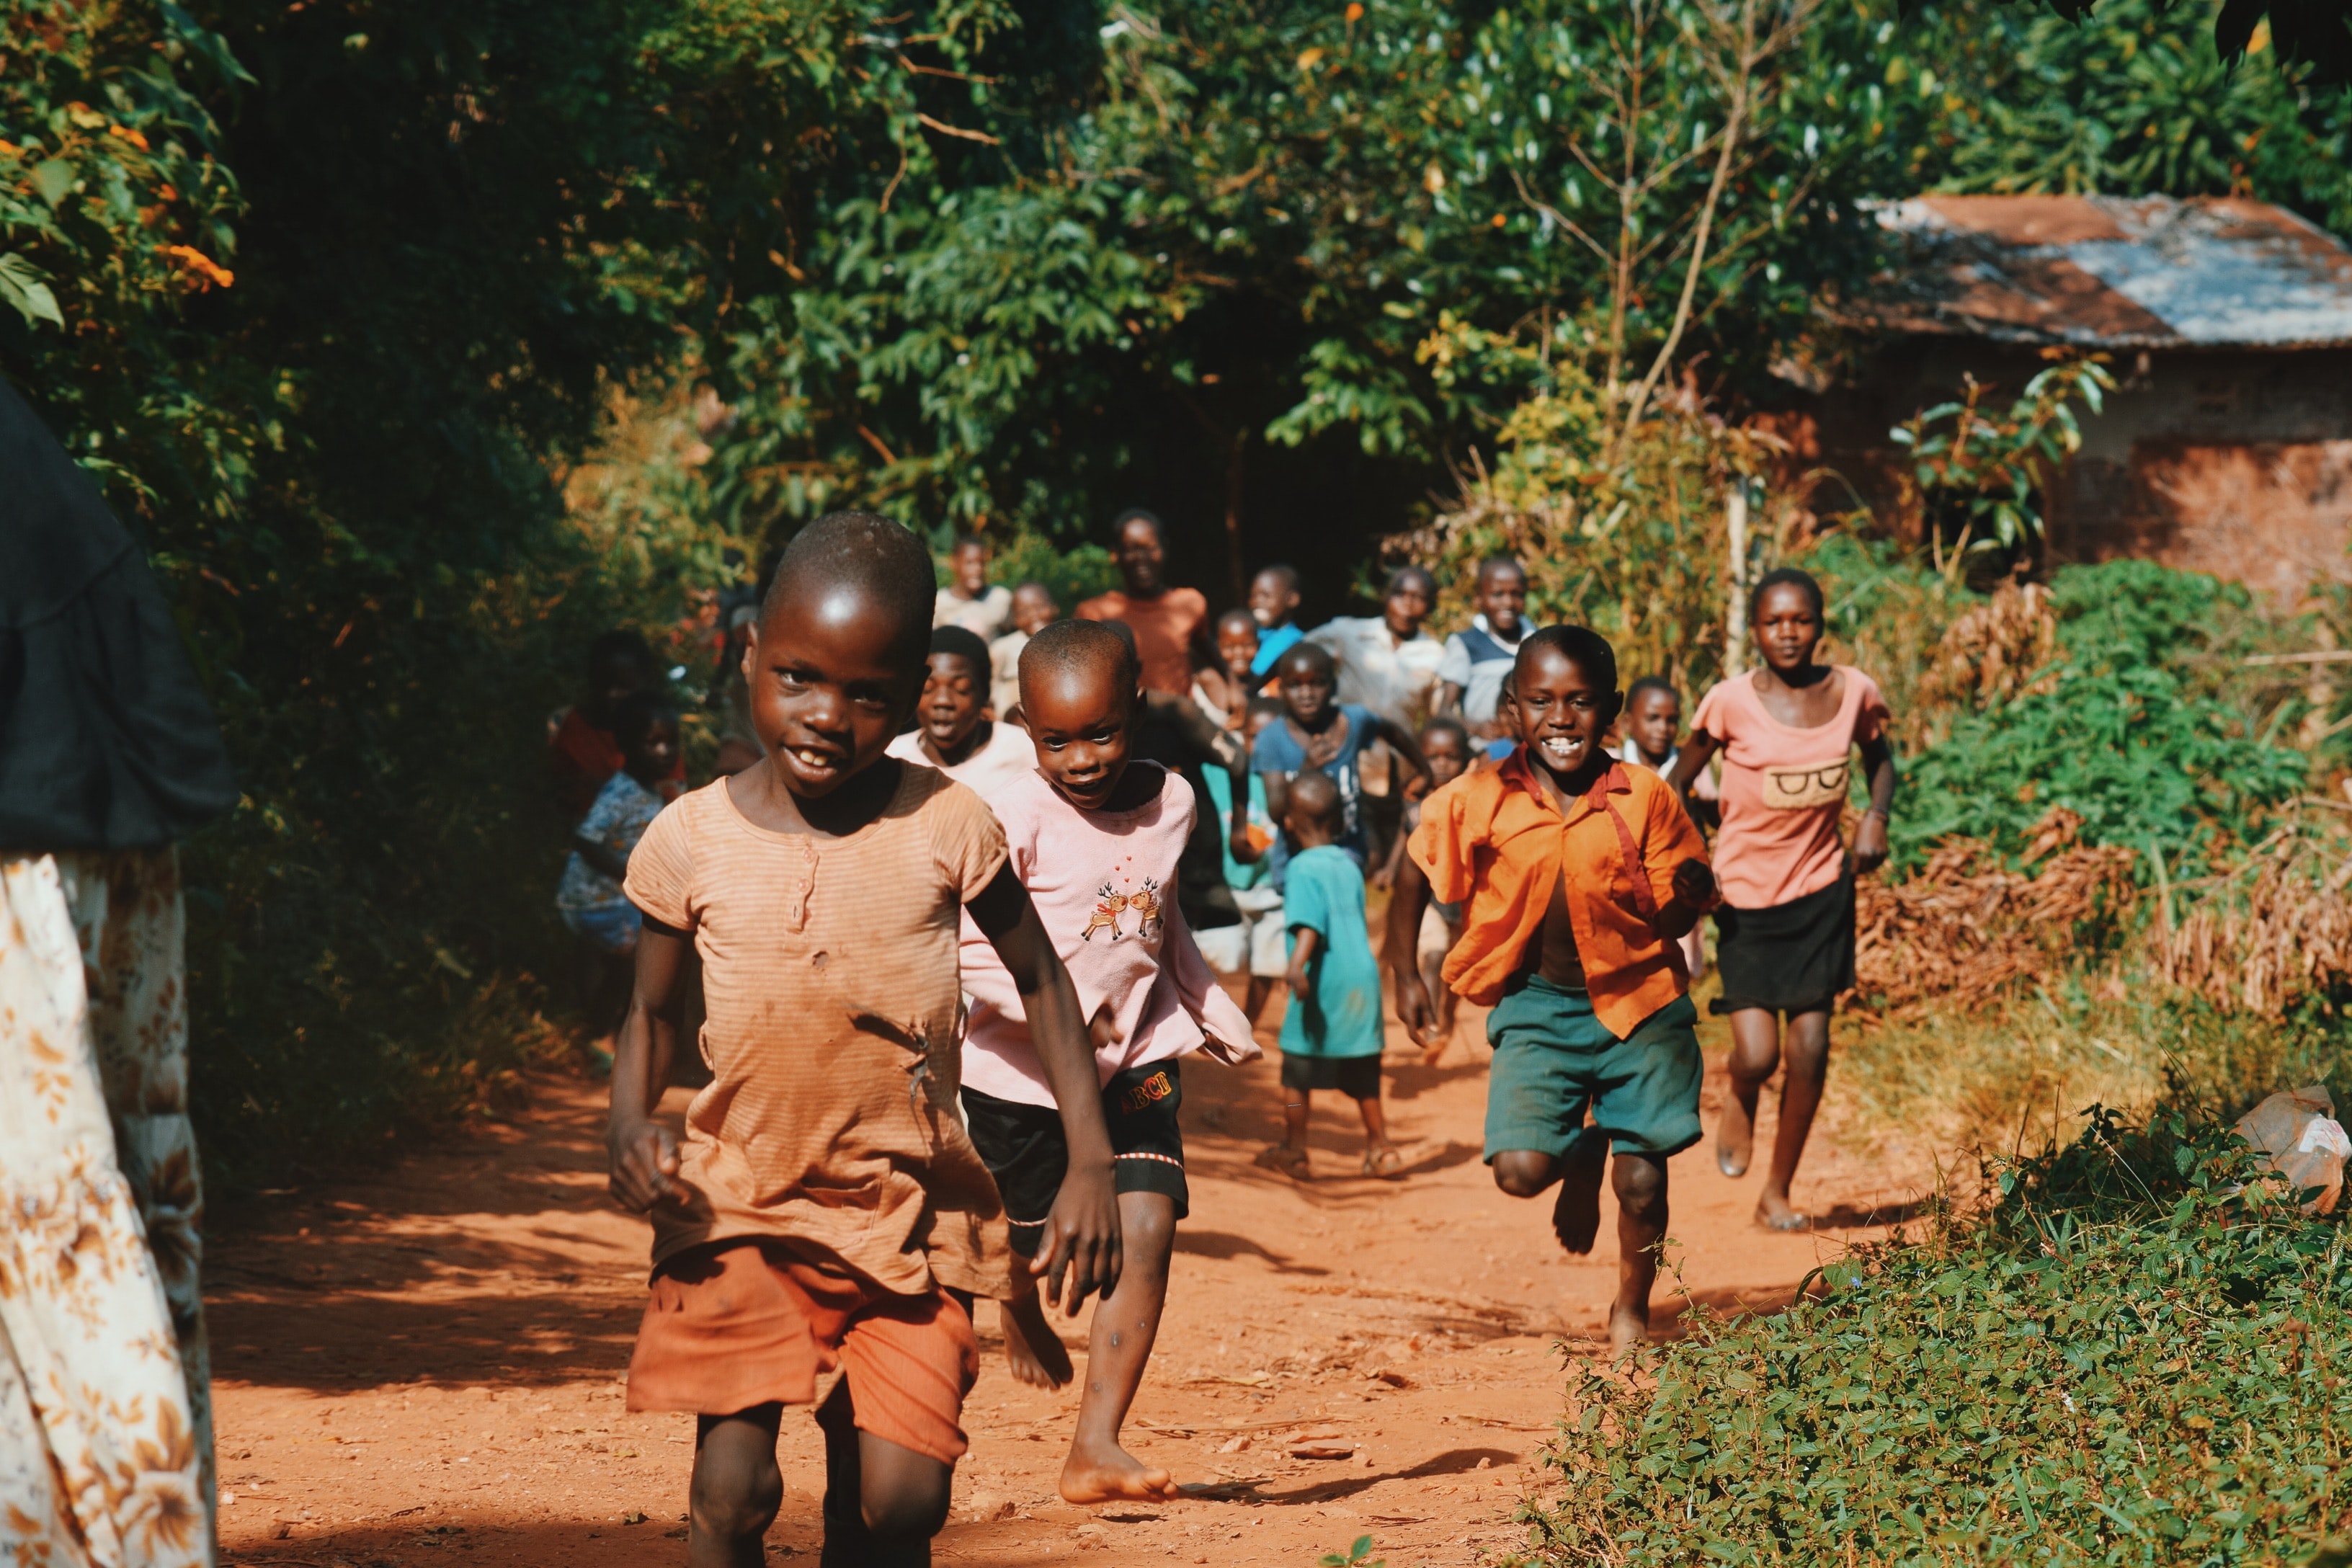 Children running in Africa